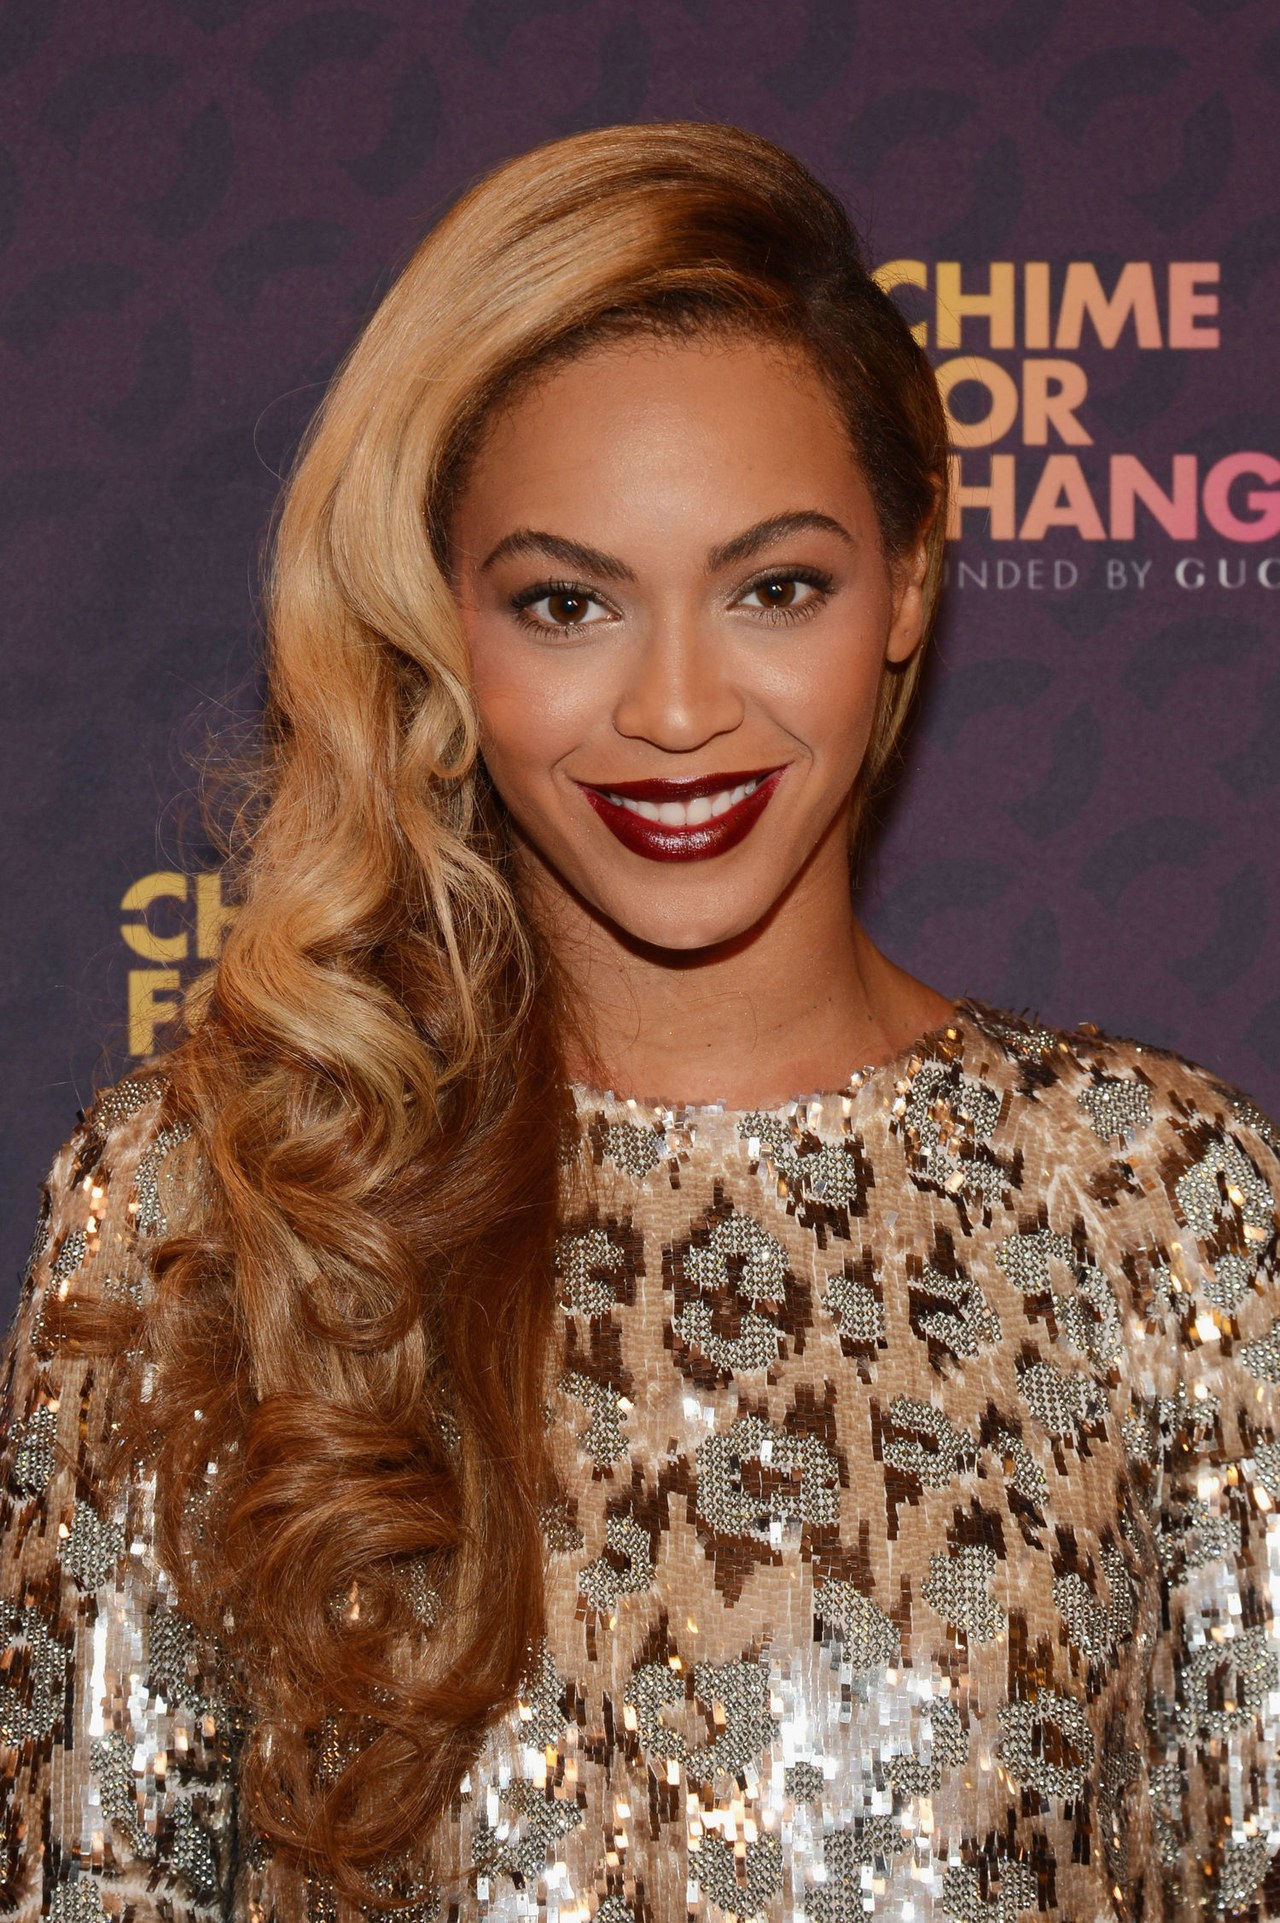 Beyoncé dark lipstick chime for change